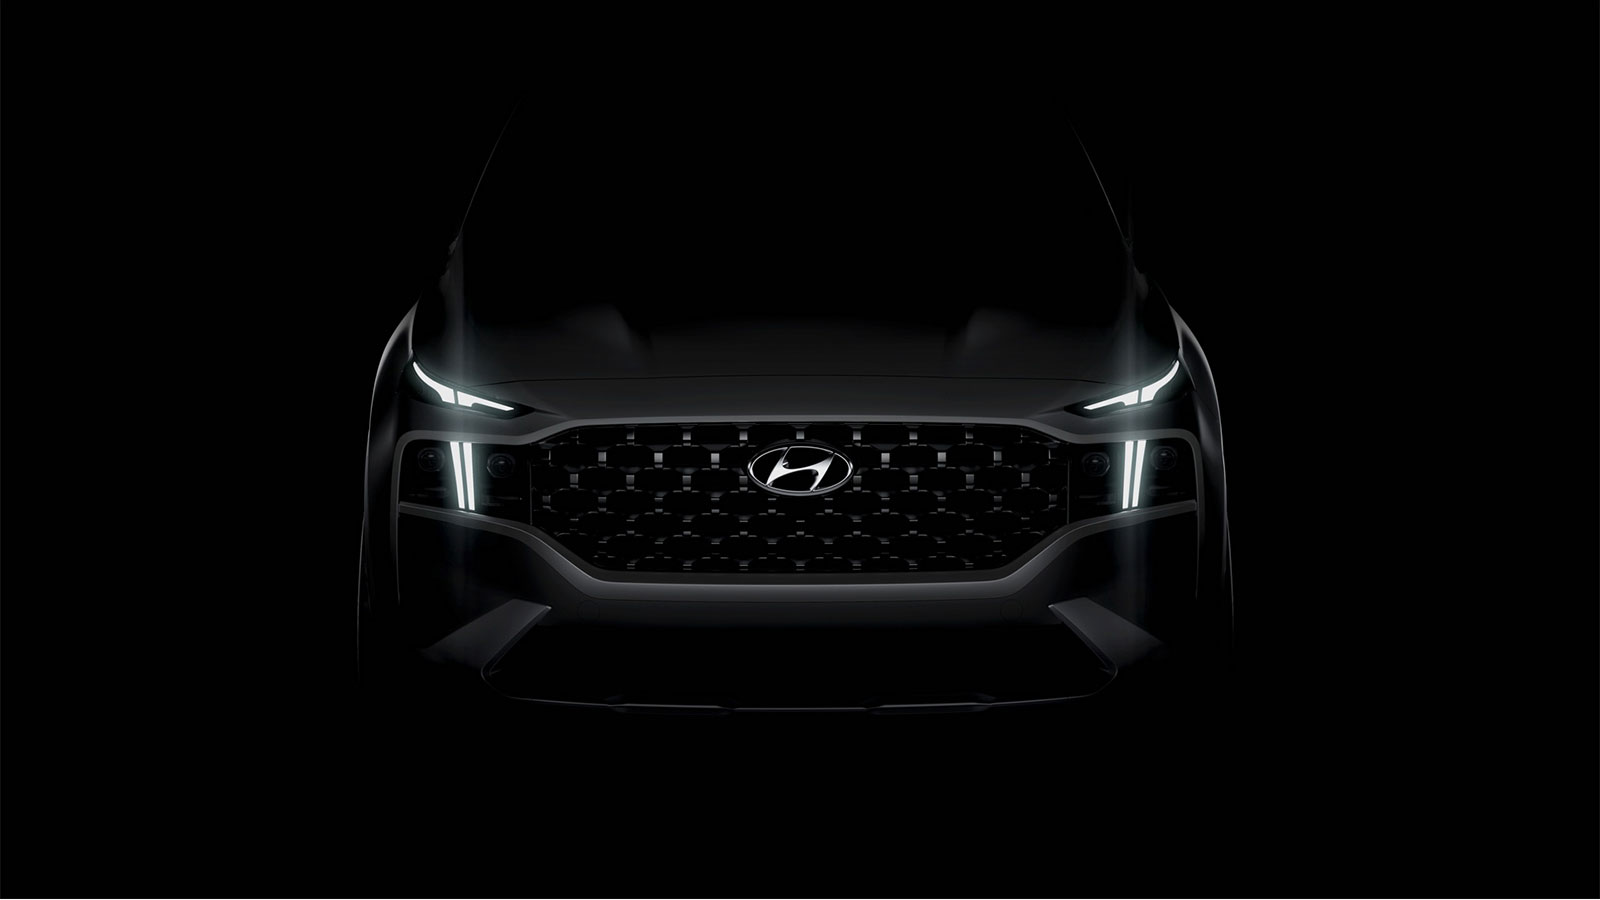 2021 Hyundai Santa Fe Teaser